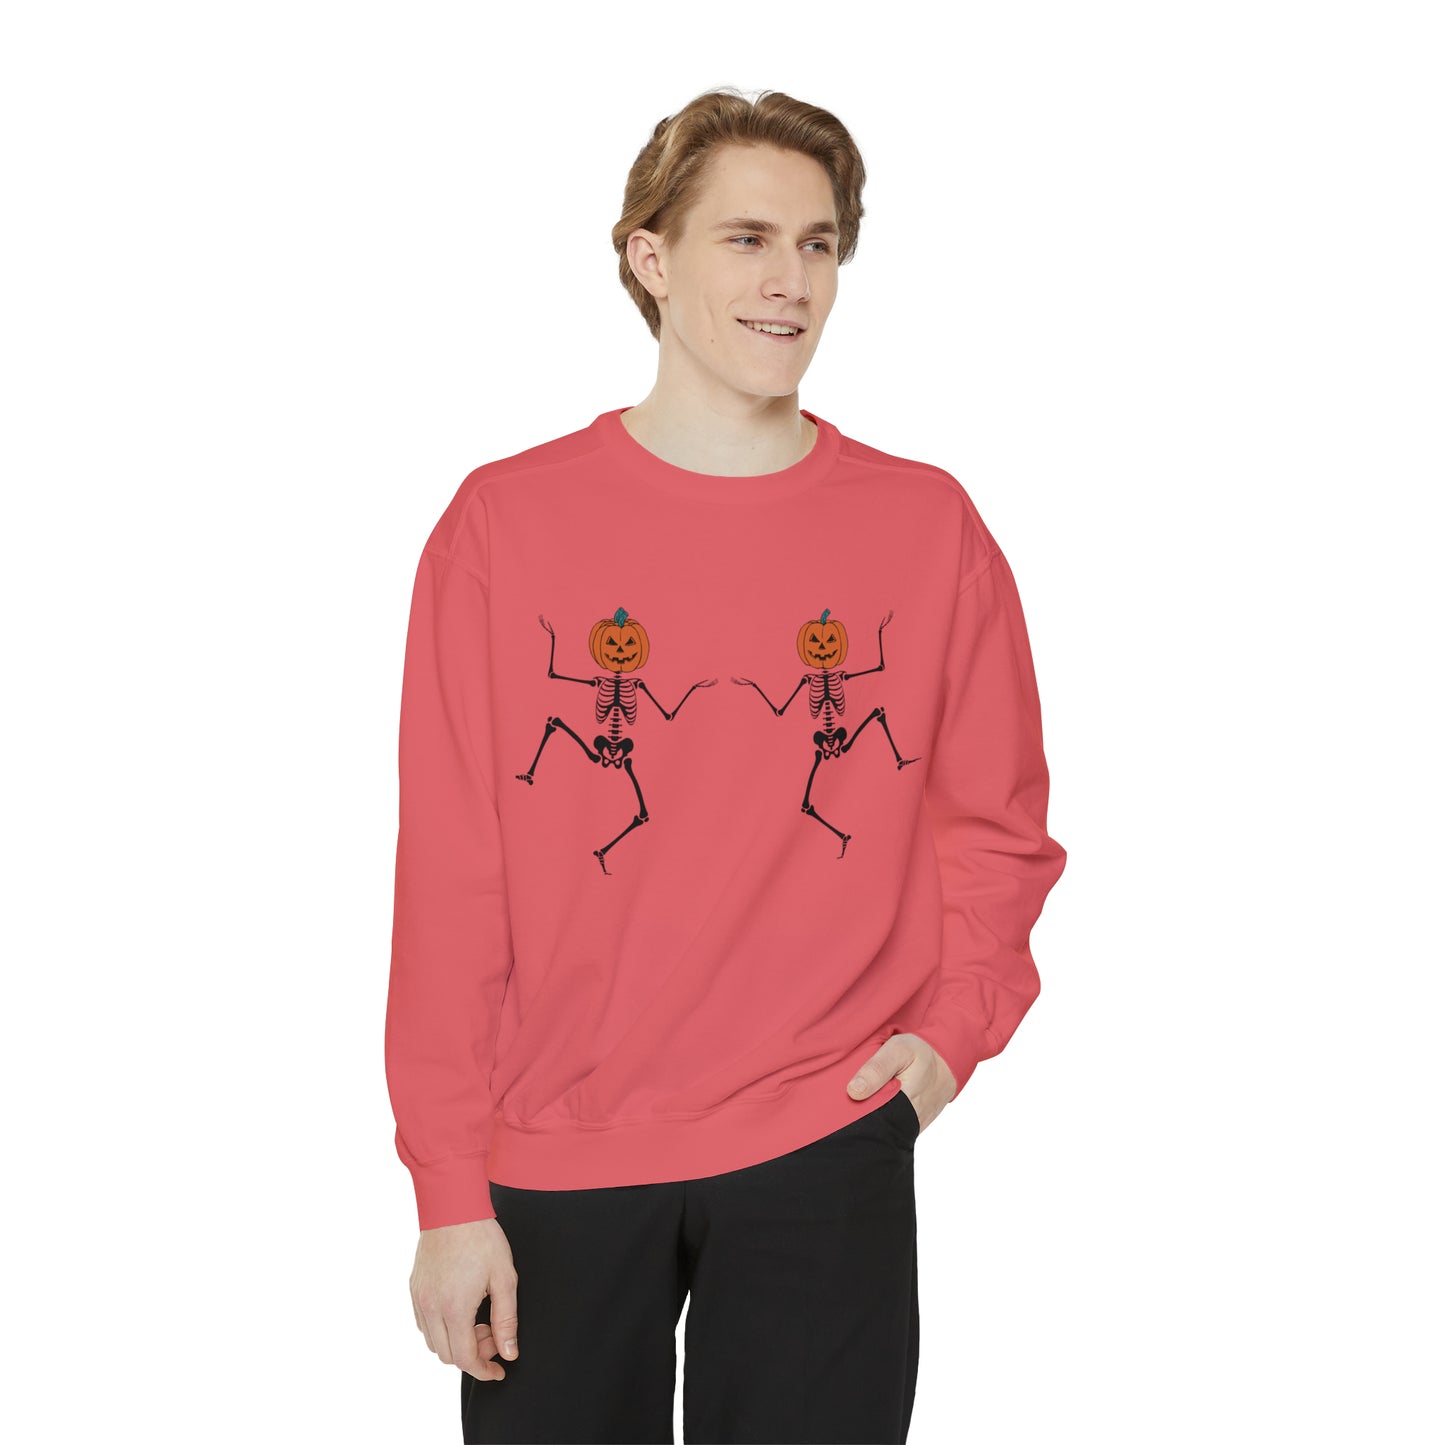 Pumpkin Skeletons Dancing, Comfort Colors, Crewneck, Unisex Garment-Dyed Sweatshirt